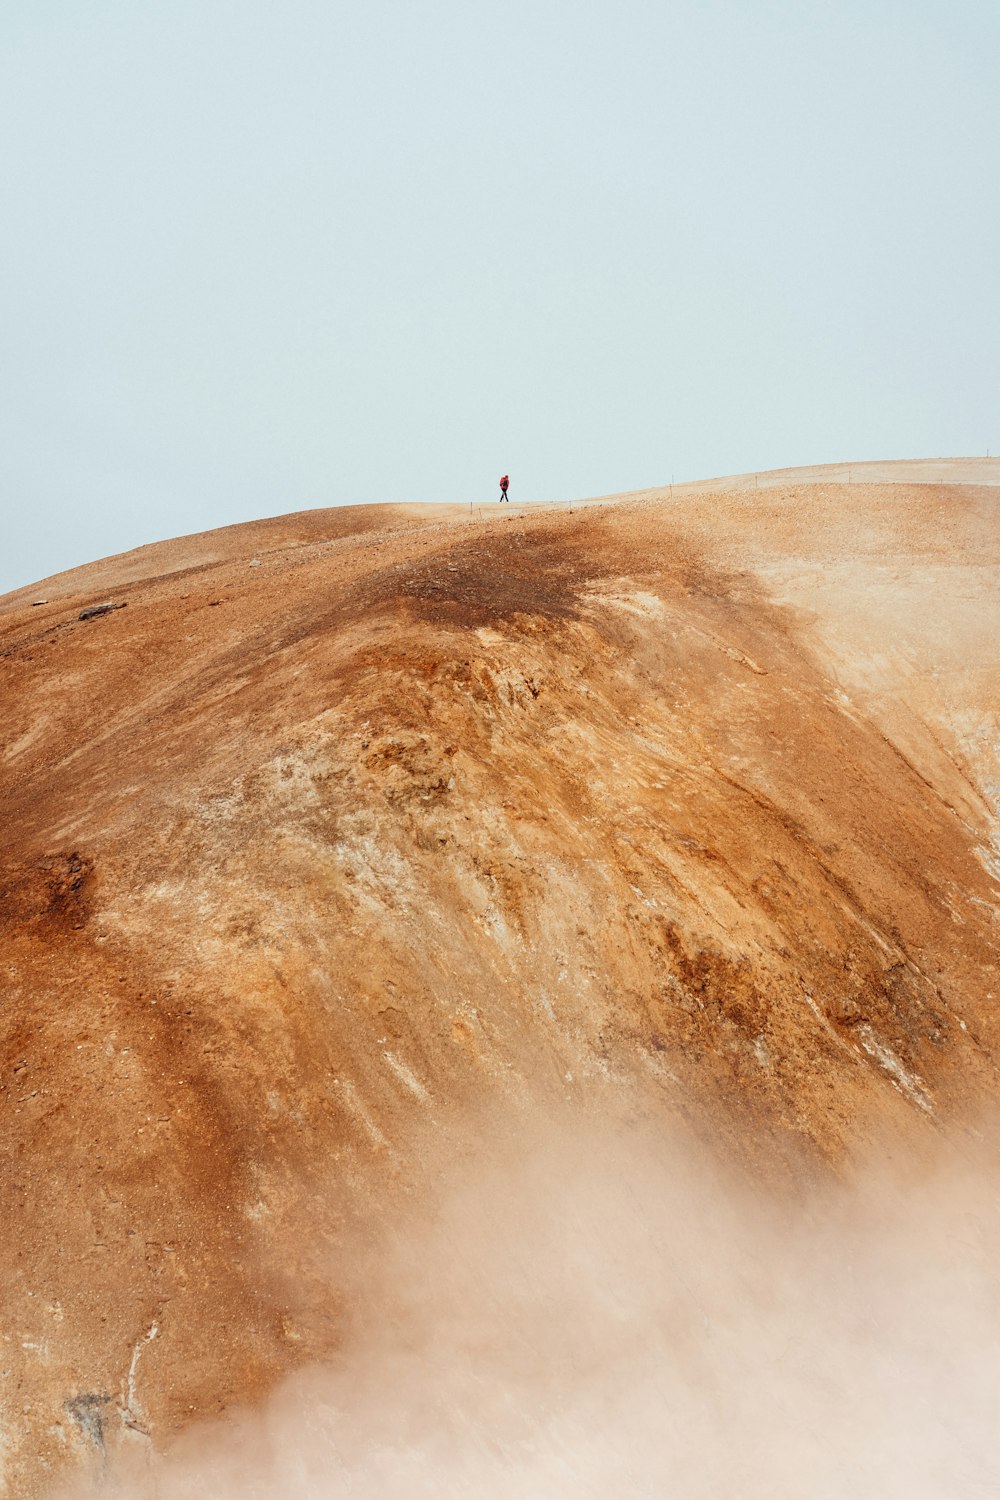 Una persona sola in piedi sulla cima di una collina